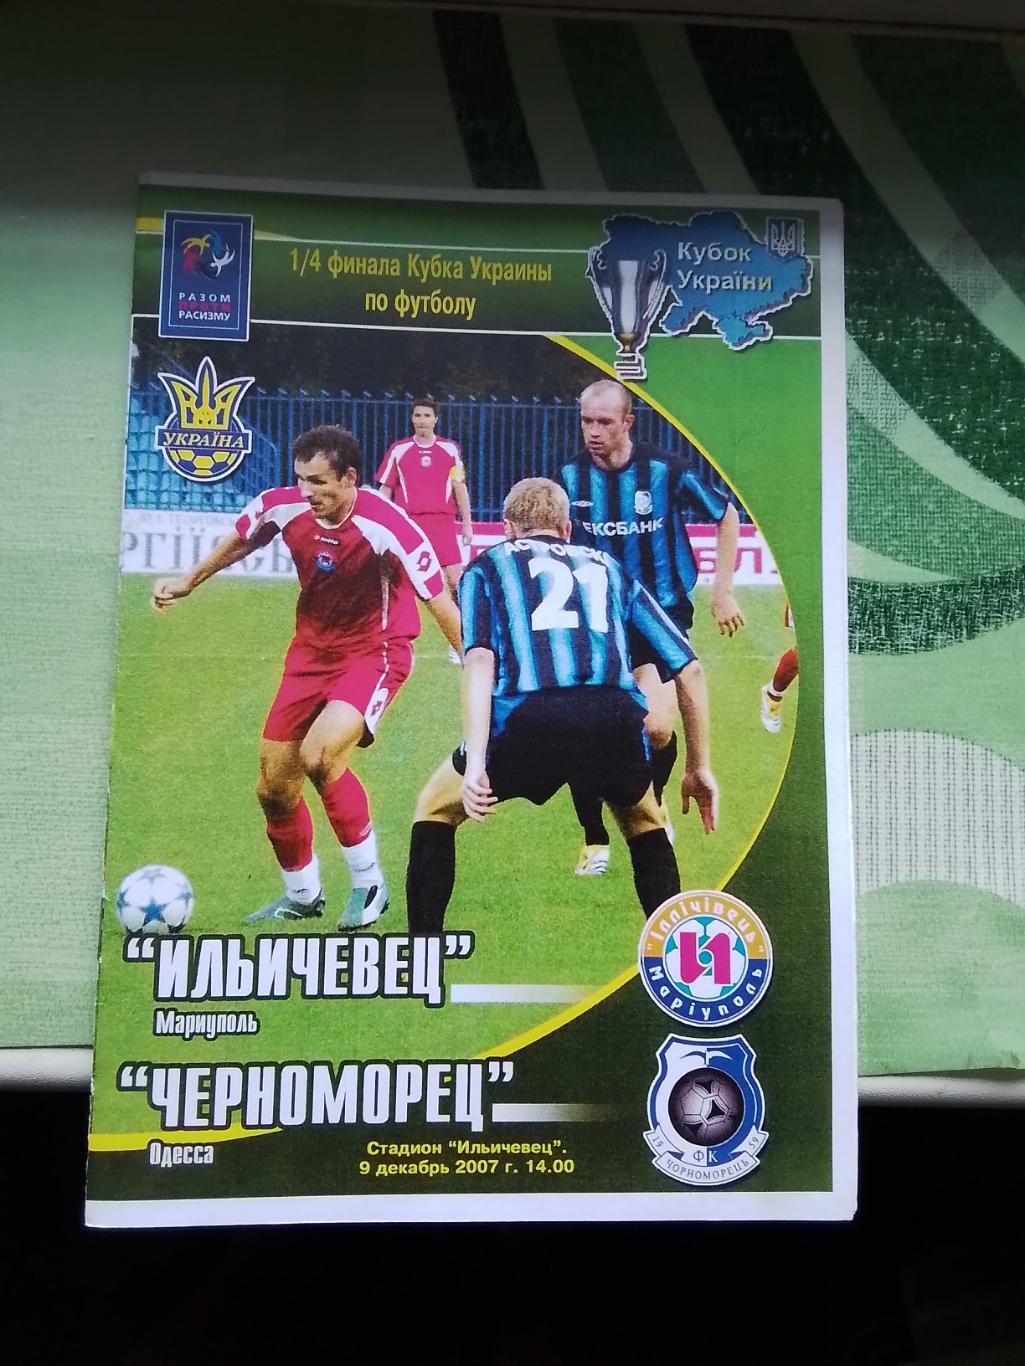 Ильичёвец Мариуполь - Черноморец Одесса 2007- 2008 Кубок Украины 1/4